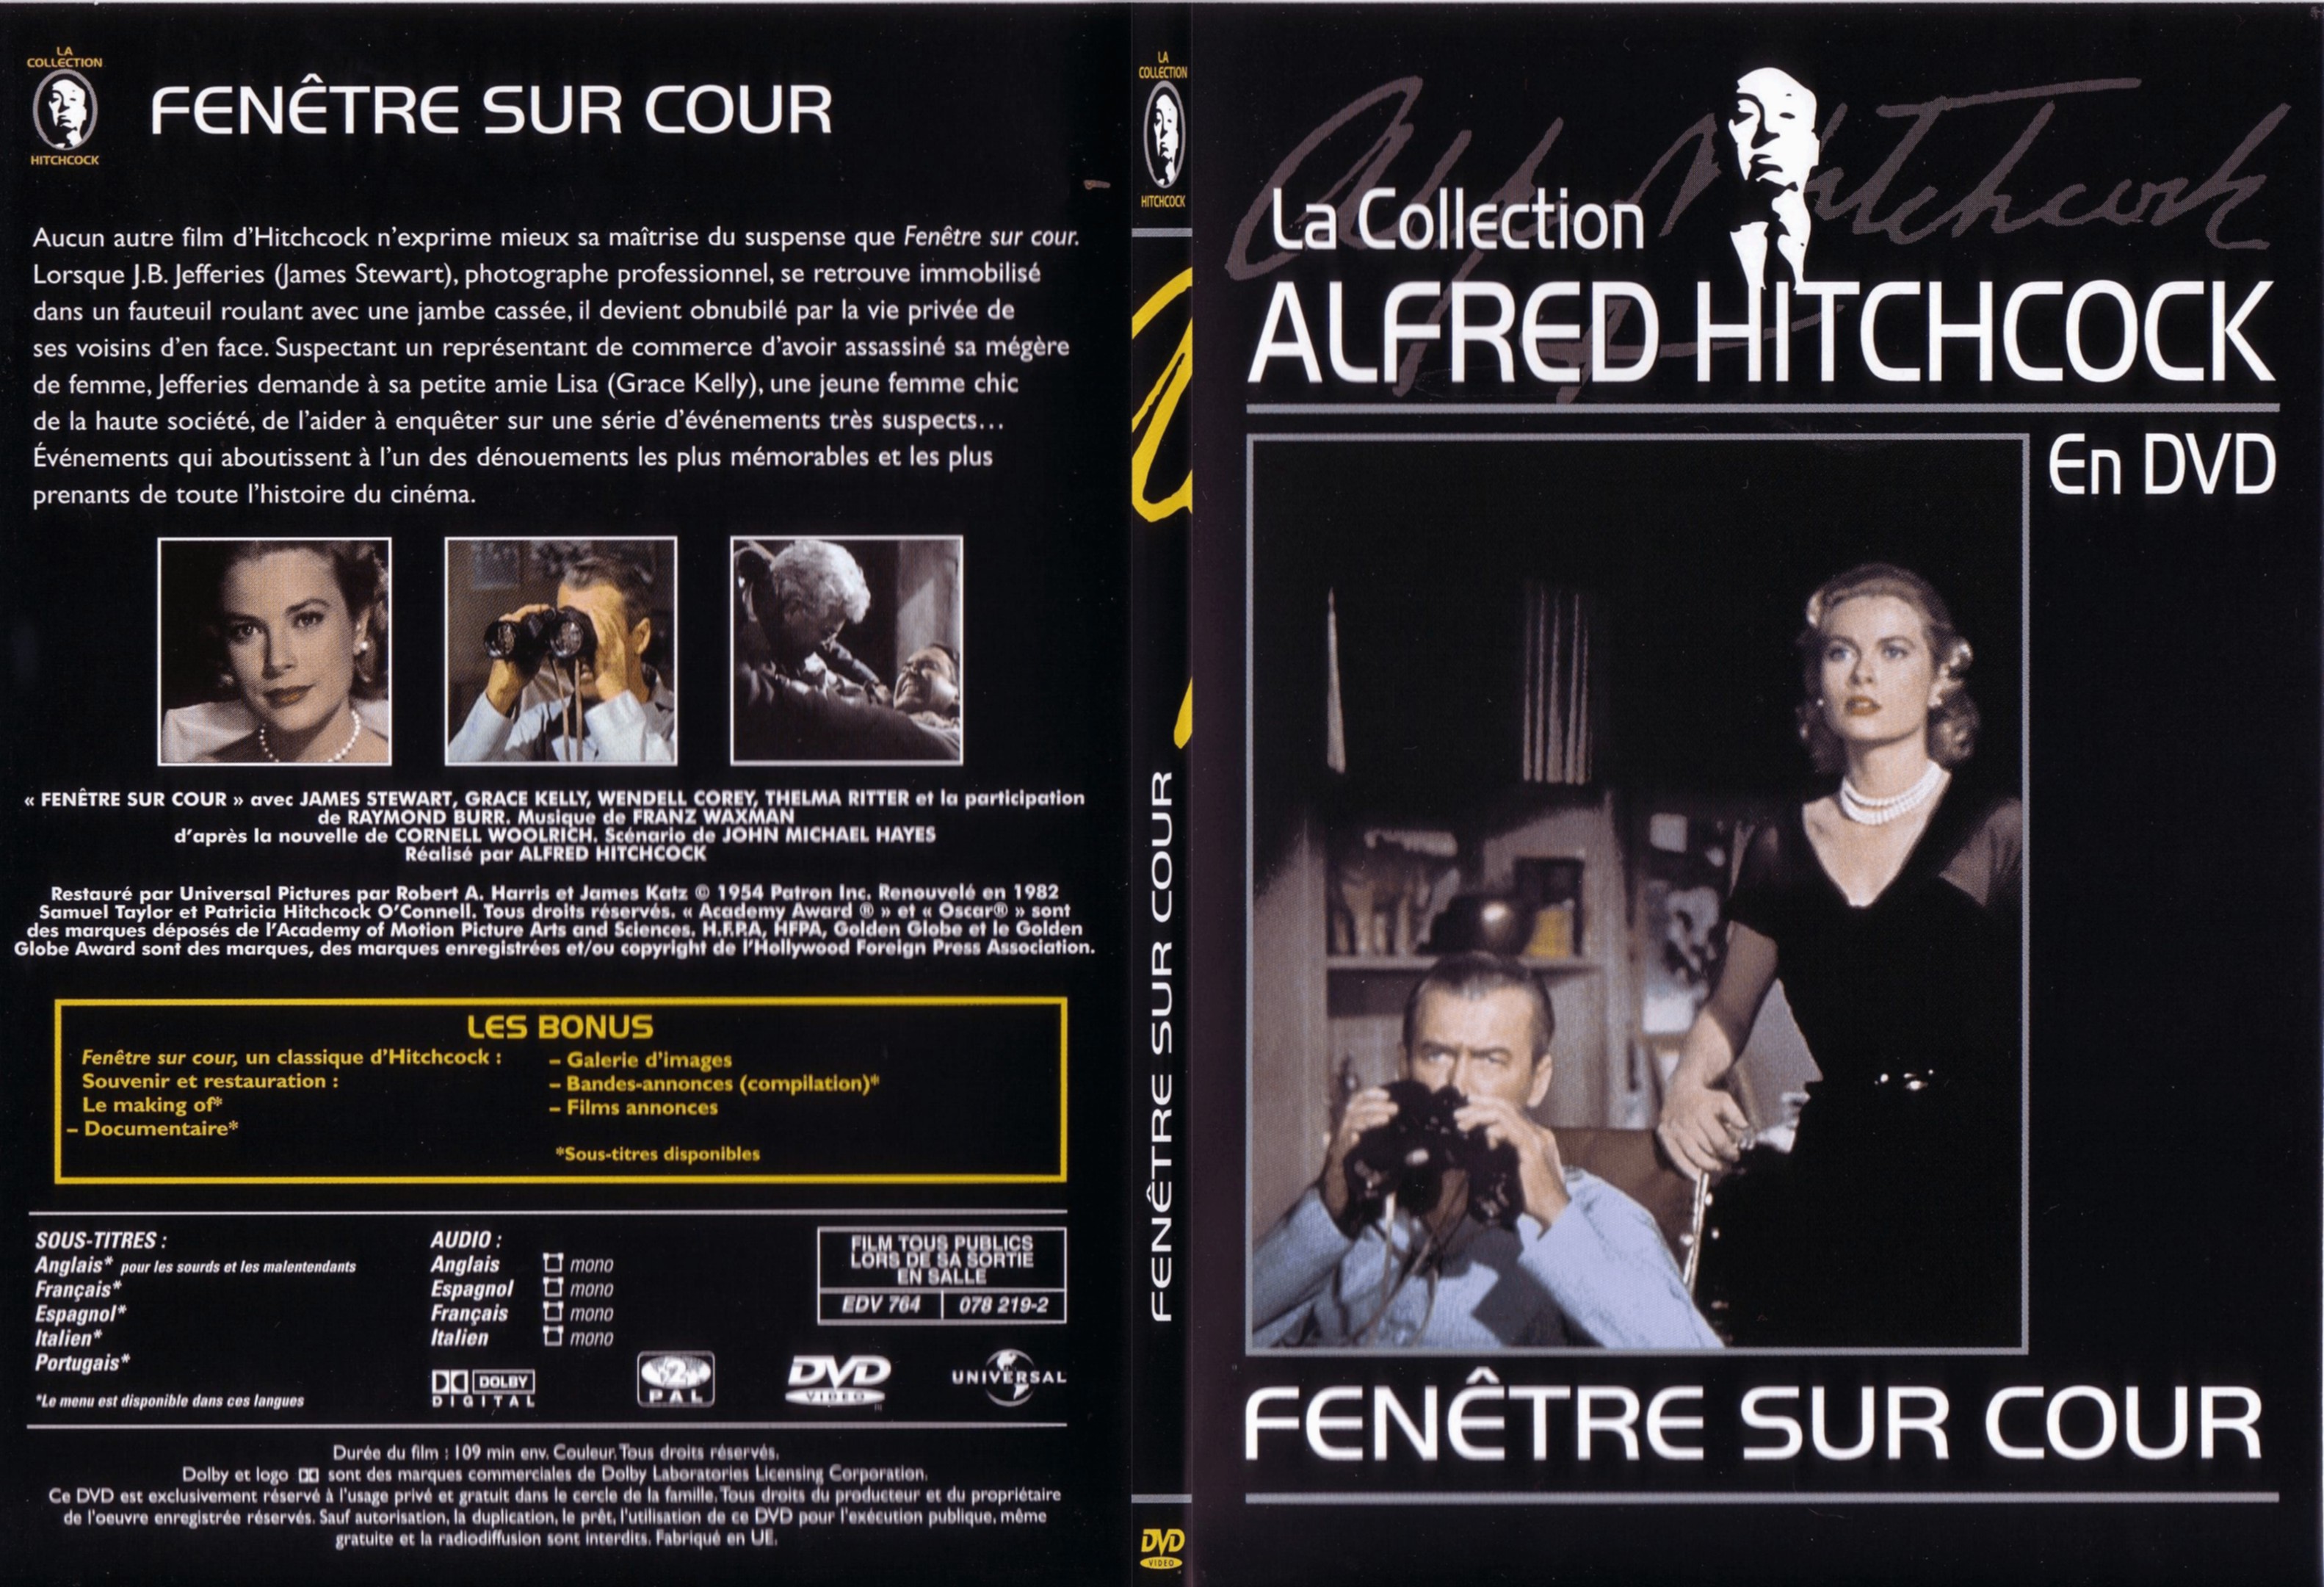 Jaquette DVD Fenetre sur cour (Hitchcock) - SLIM